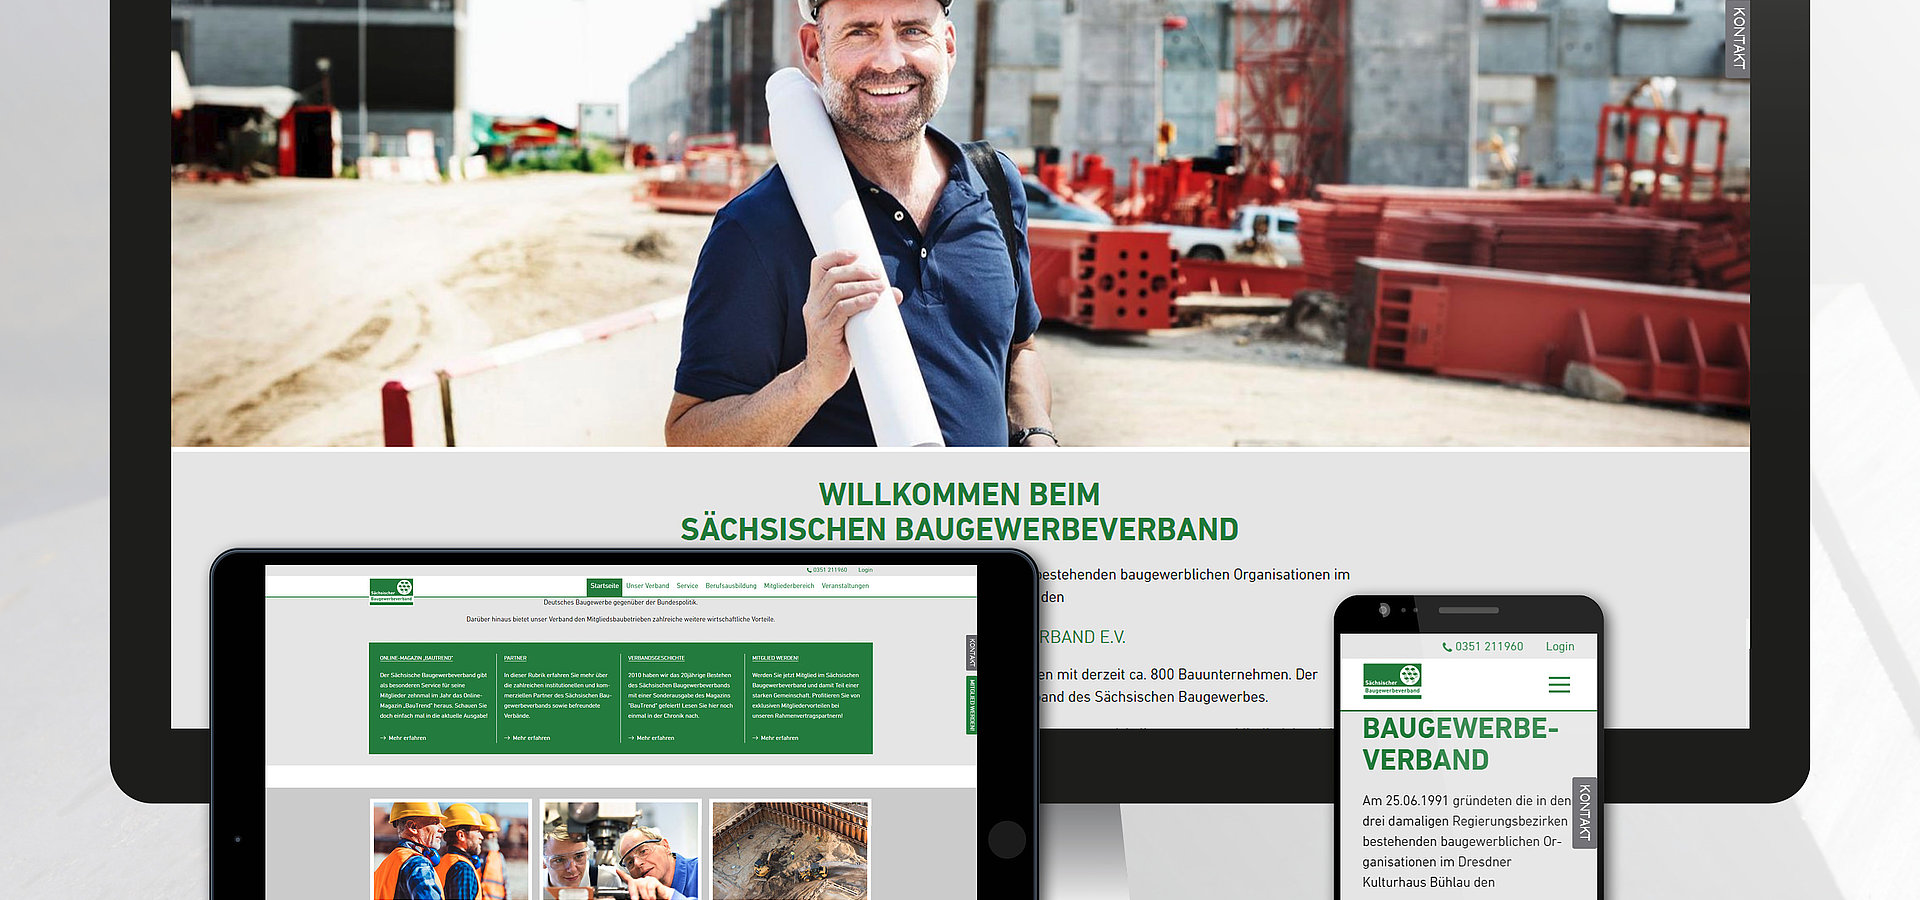 TYPO3 Webdesign: Sächsischer Baugewerbeverband Relaunch mit TYPO3 CMS